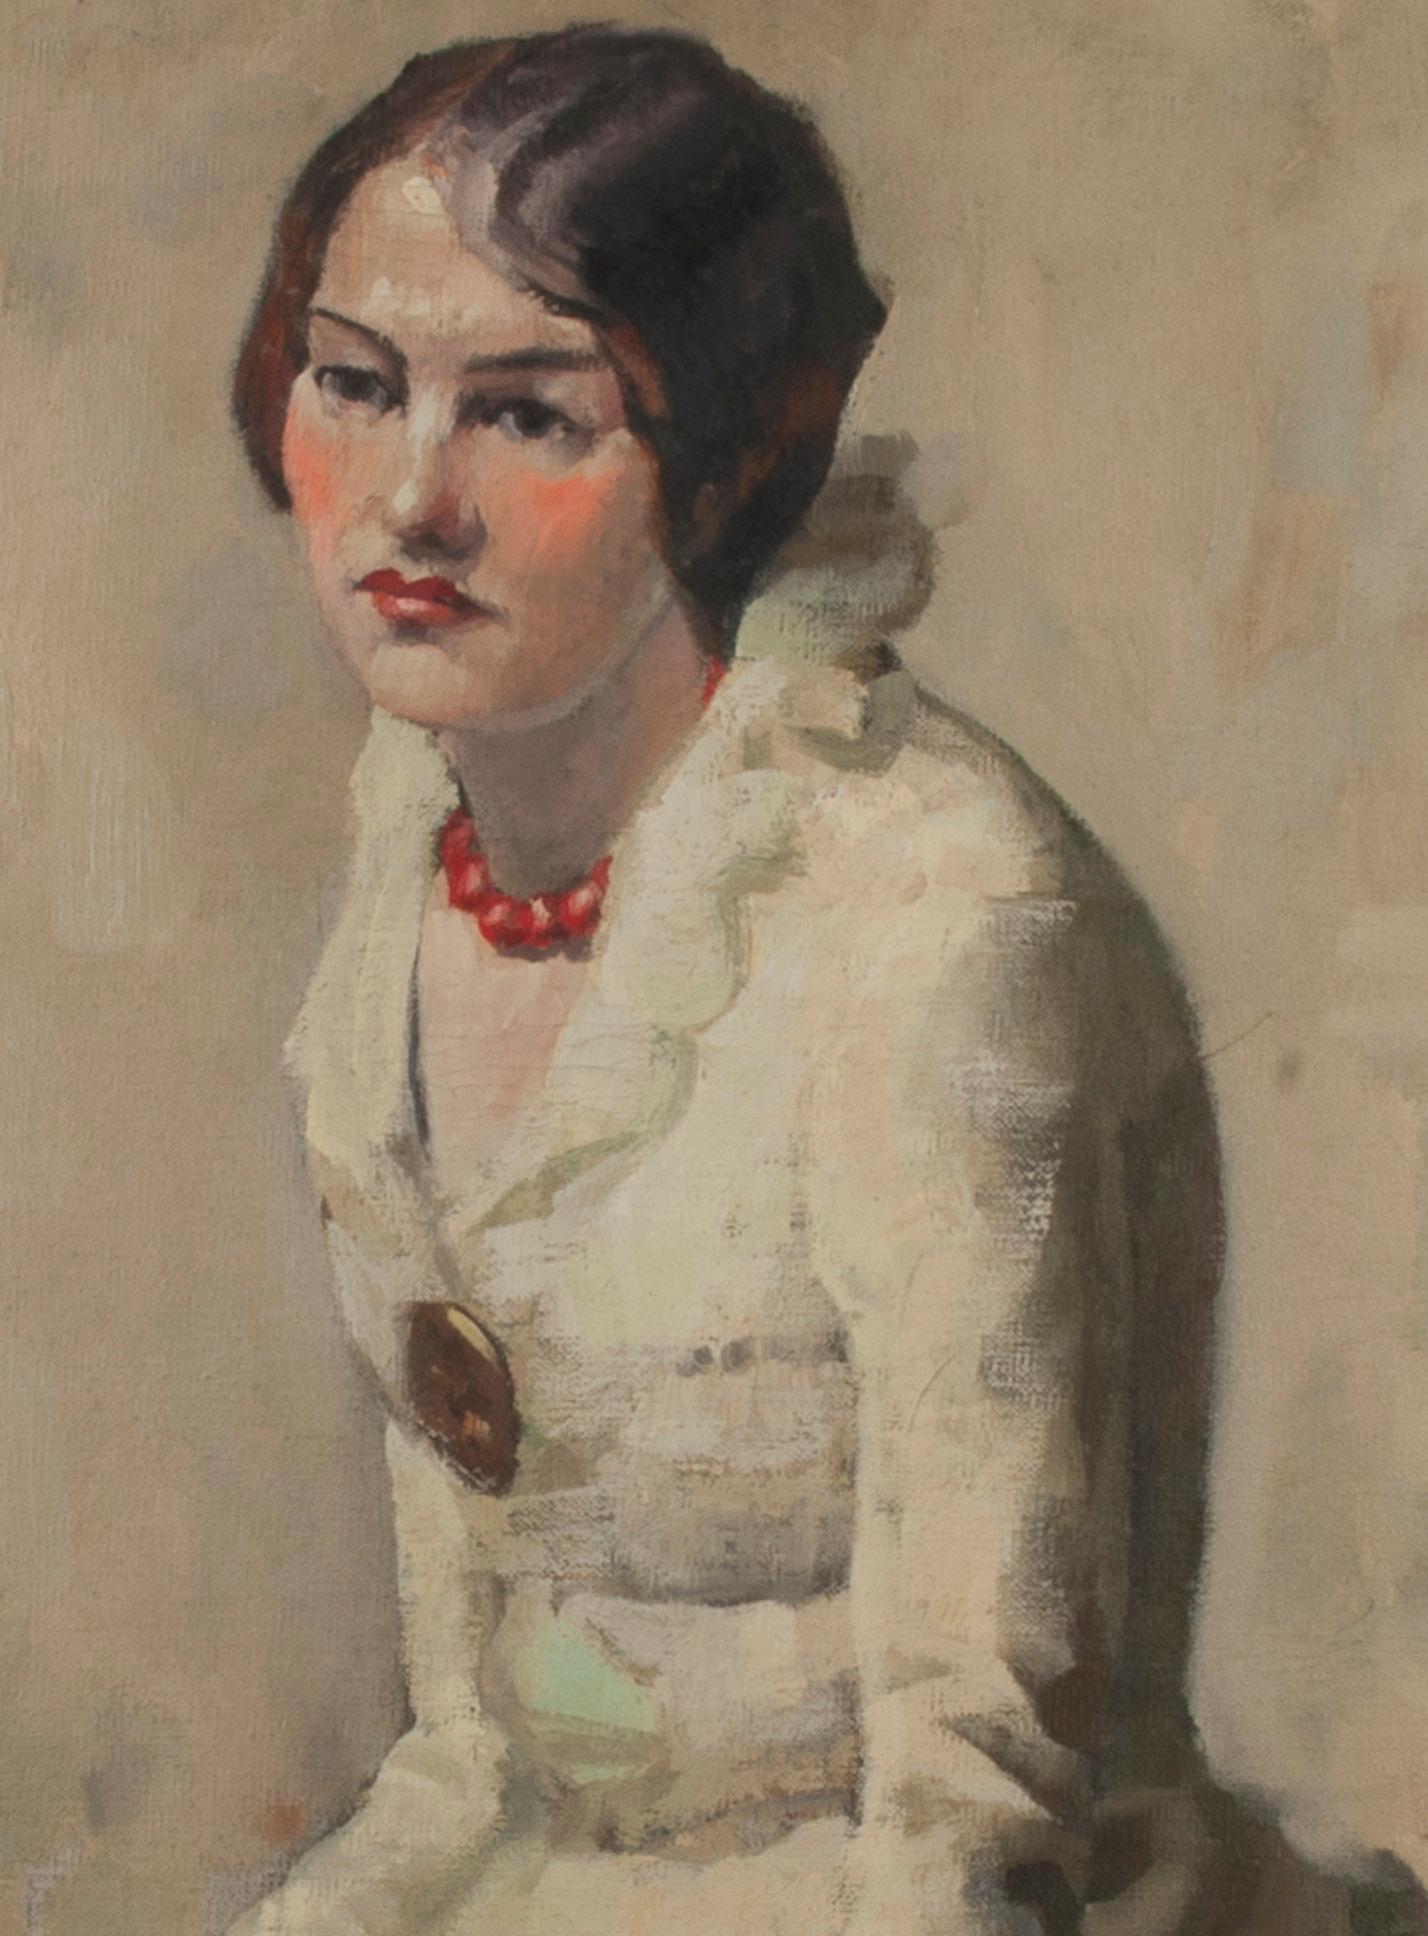 Portrait d'une femme assise
Huile sur toile, c. 1930
Signé au dos à la peinture à l'huile : 